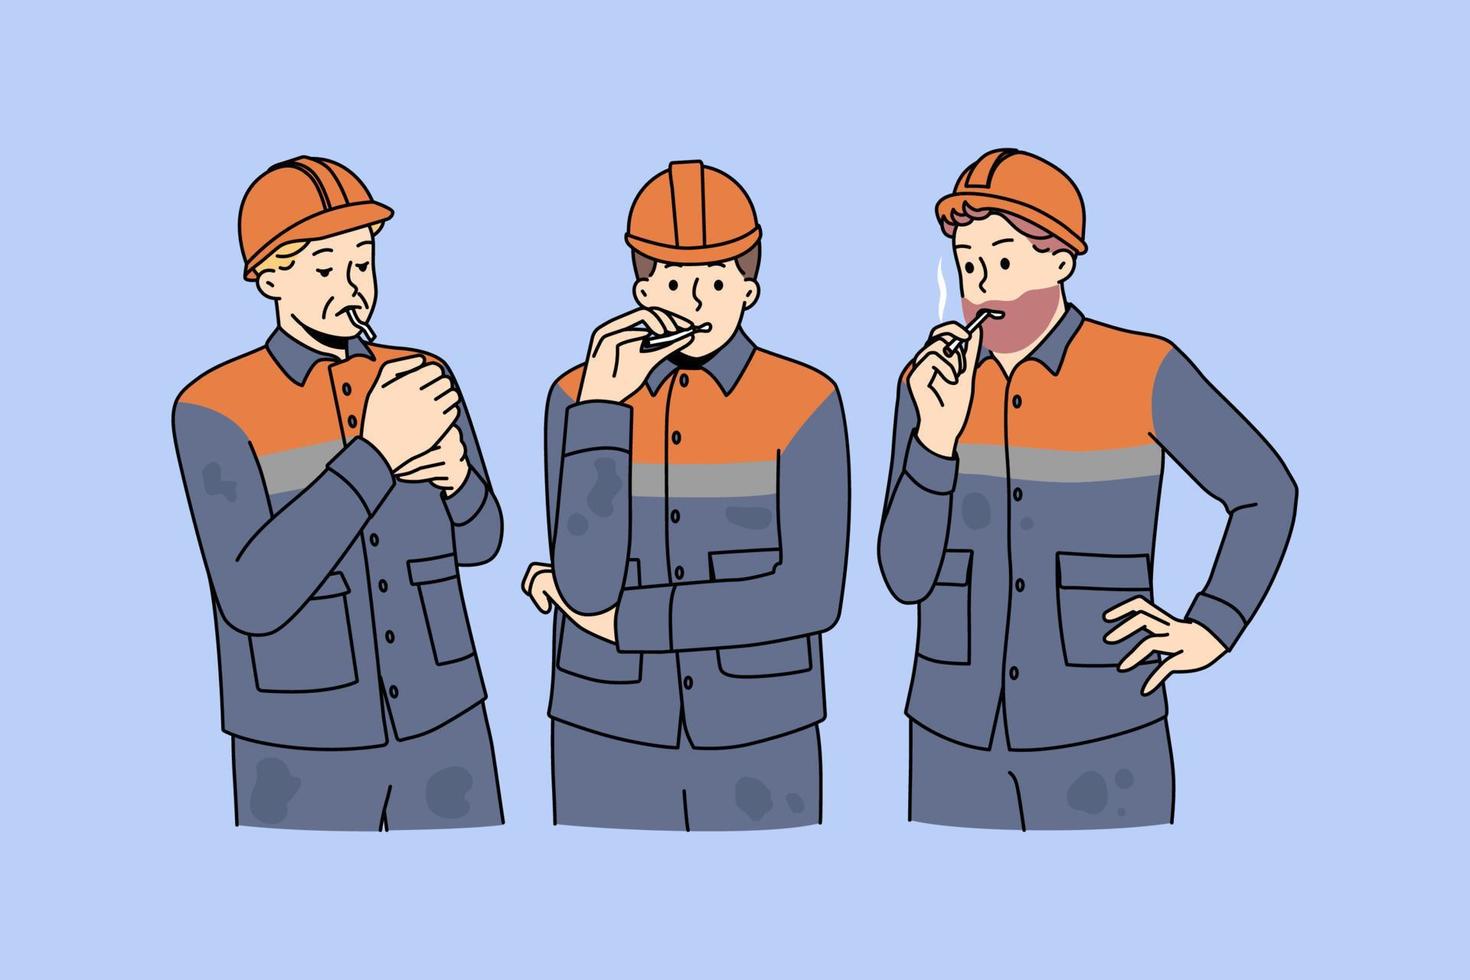 männliche arbeiter in uniformen, die draußen zigaretten rauchen. baumeister bei der arbeit haben eine arbeitspause auf der baustelle an einem speziellen rauchplatz. schlechte Angewohnheit. vektorillustration, zeichentrickfigur. vektor